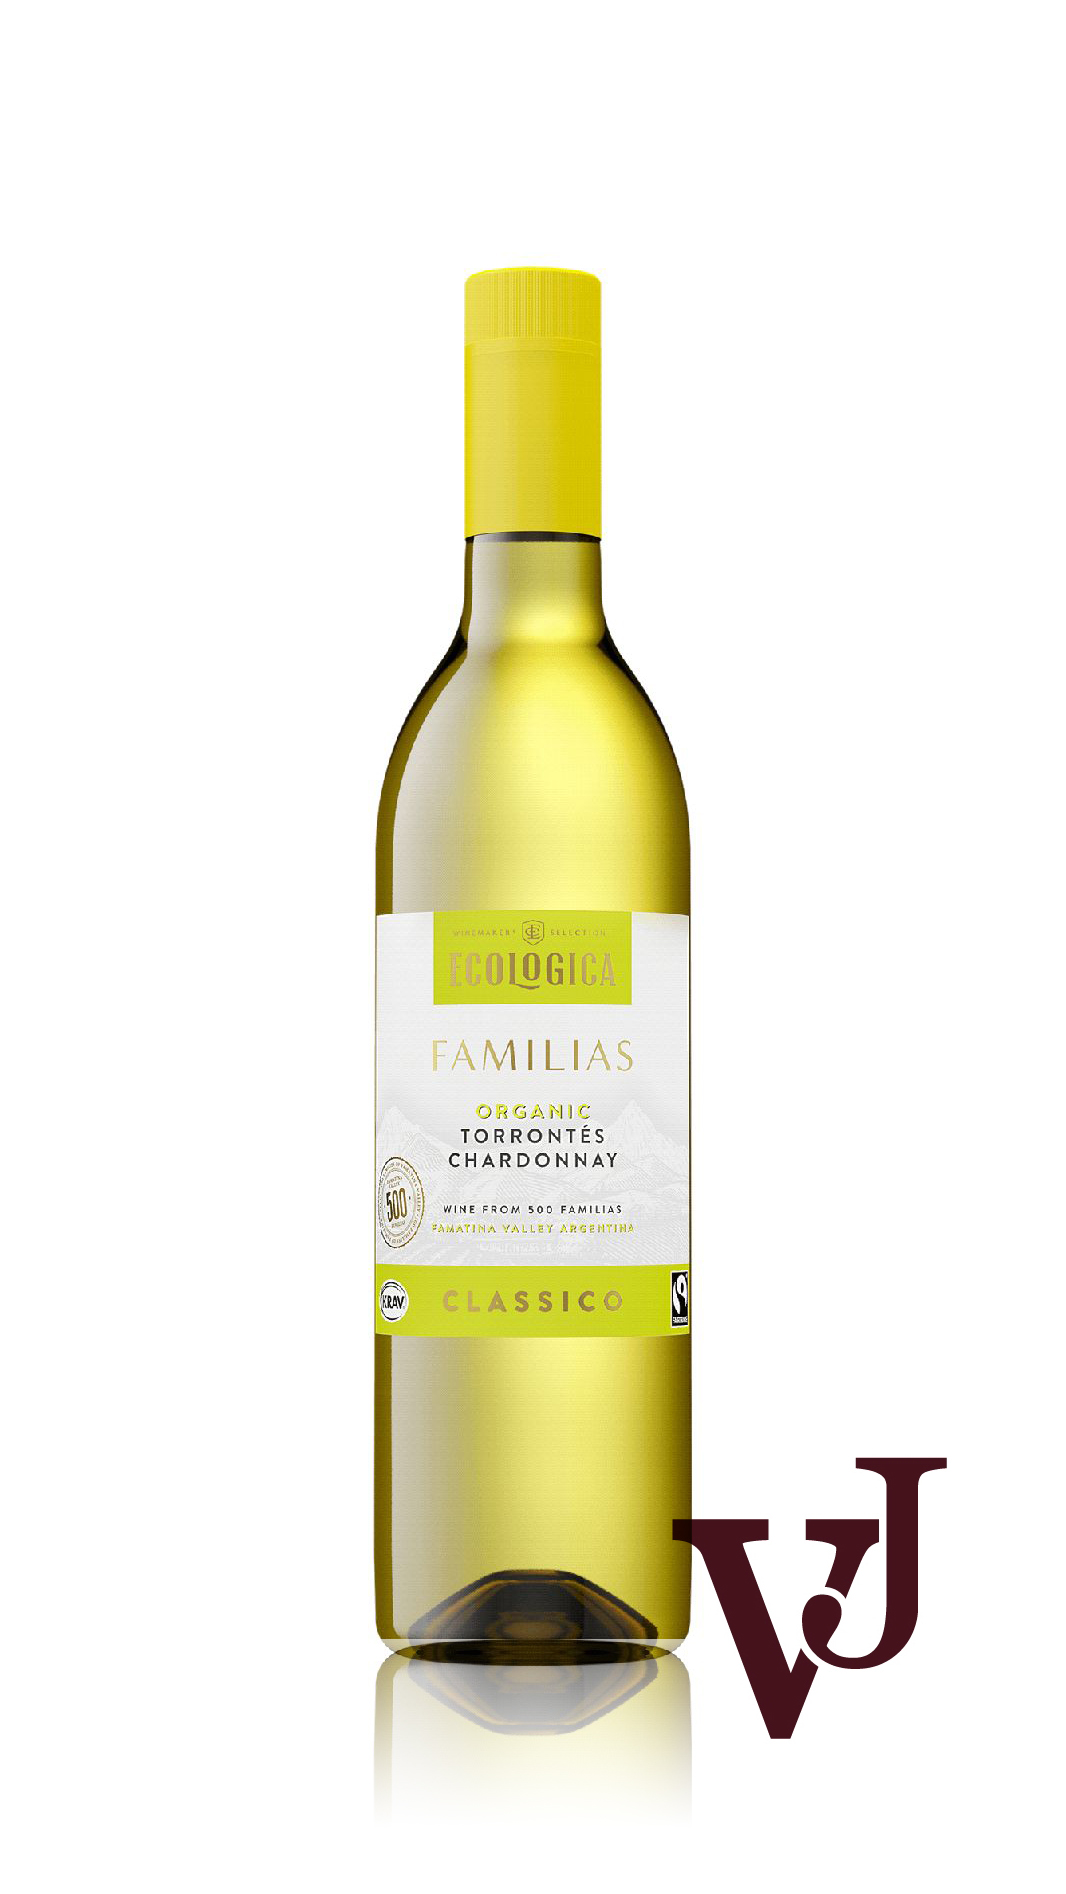 Vitt Vin - Ecologica Familias artikel nummer 240301 från producenten La Riojana från området Argentina